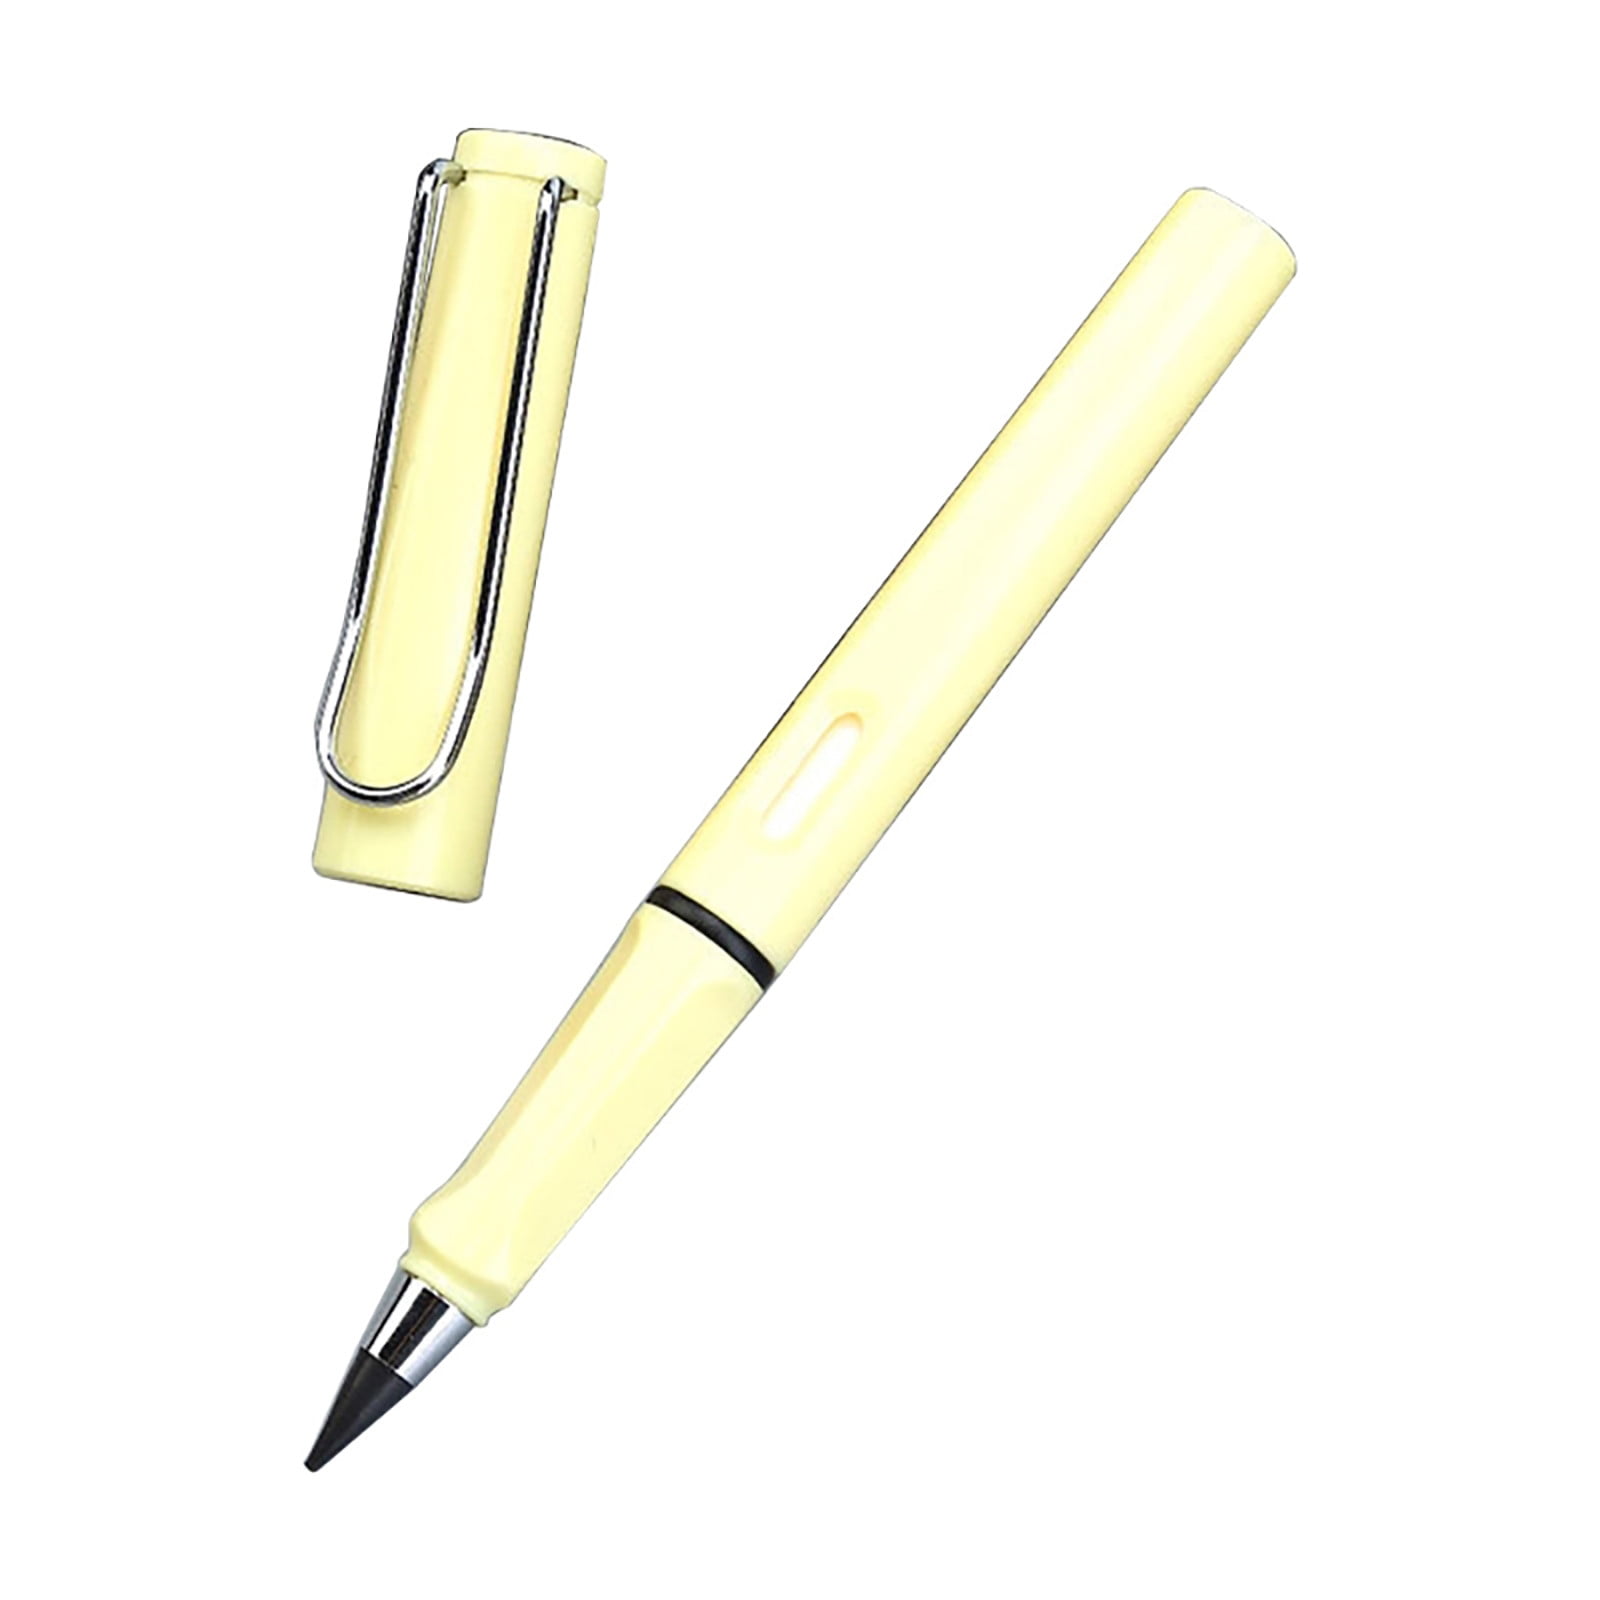 Mr. Pen- White Pens, 8 Pack, White Gel Pens for Artists, White Gel Pen,  White Ink Pen, White Pens for Black Paper, White Drawing Pens 